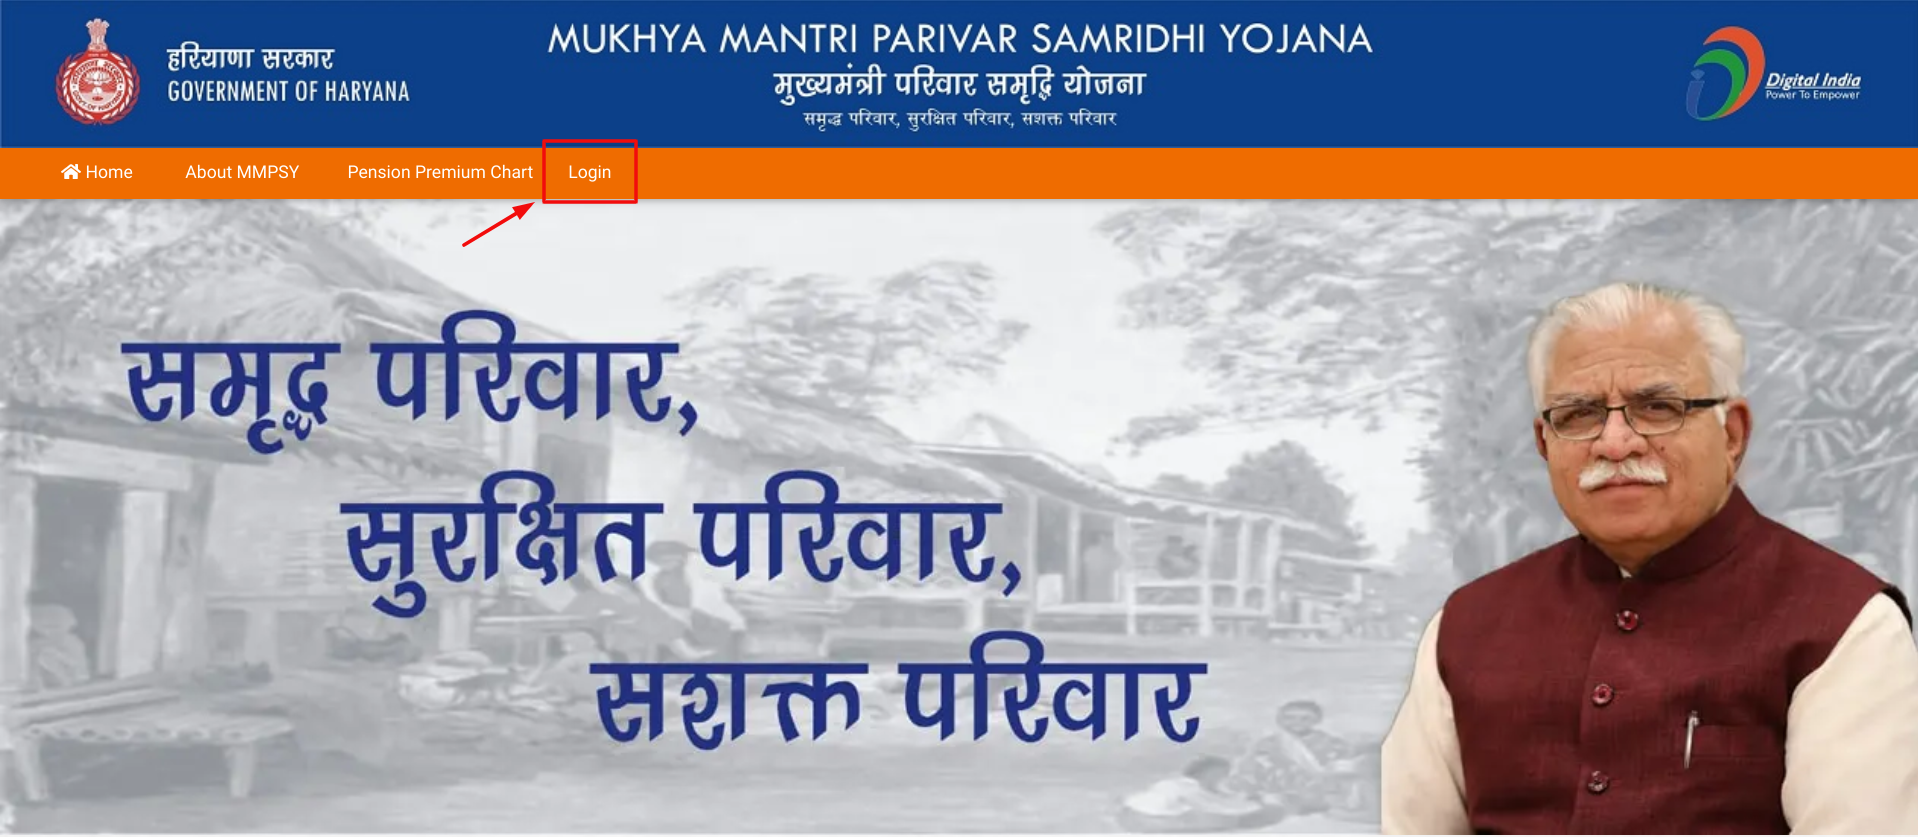 Mukhya Mantri Parivar Samridhi Yojna - Home Page